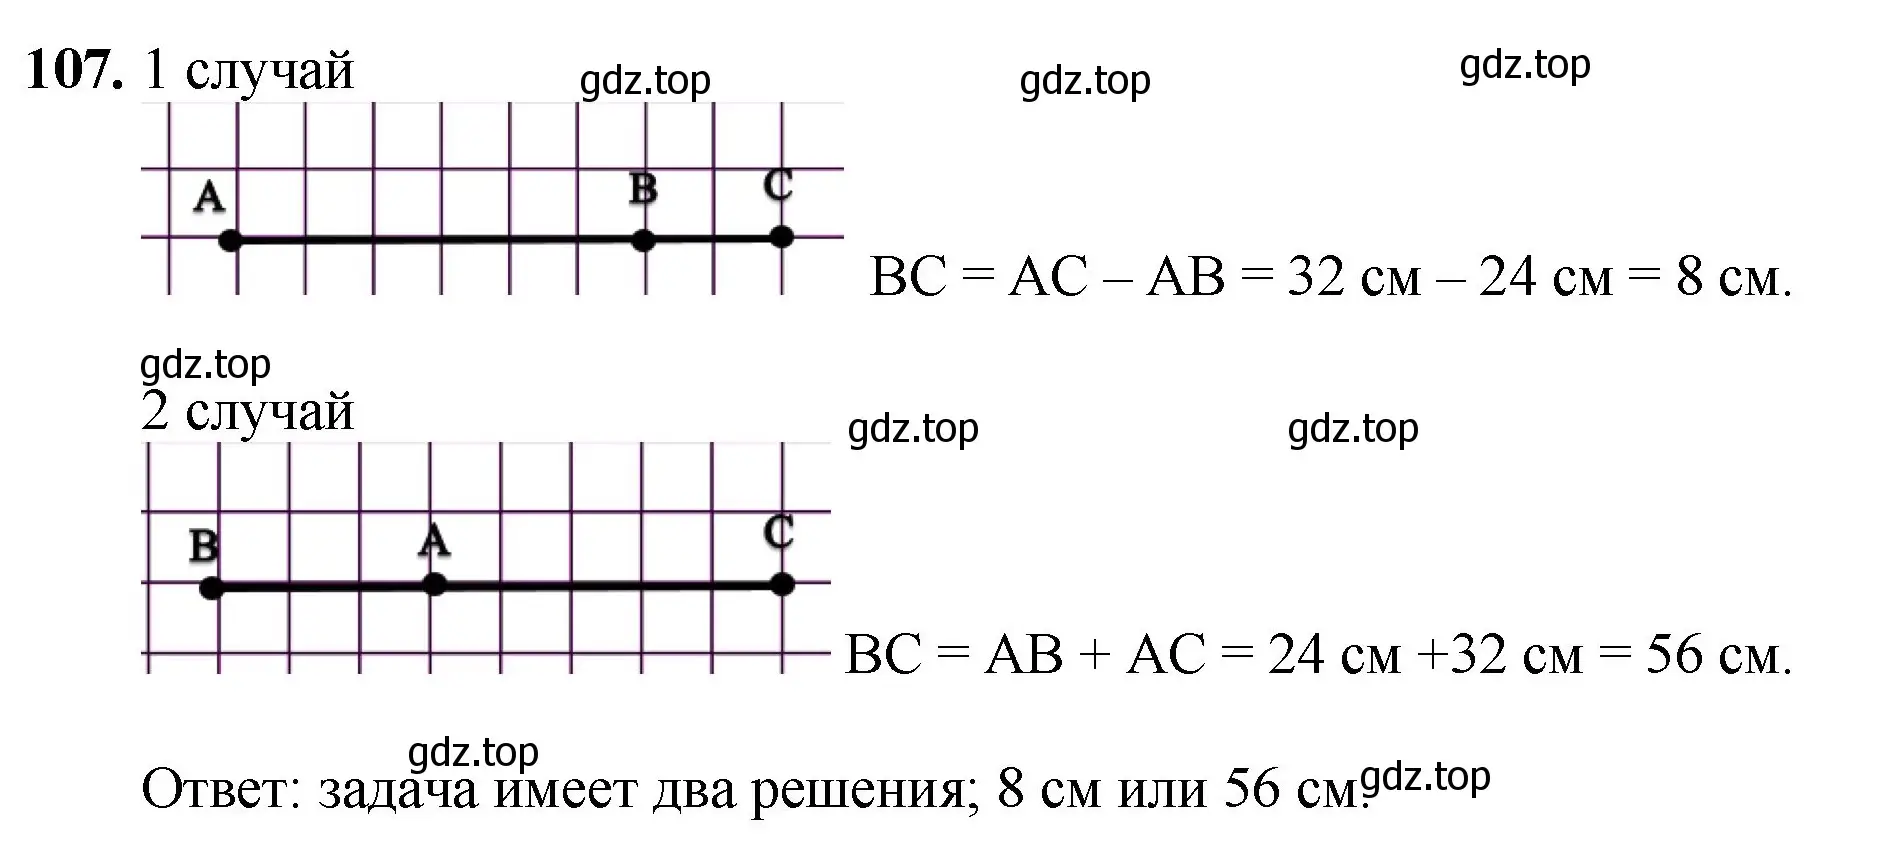 Решение номер 107 (страница 31) гдз по математике 5 класс Мерзляк, Полонский, учебник